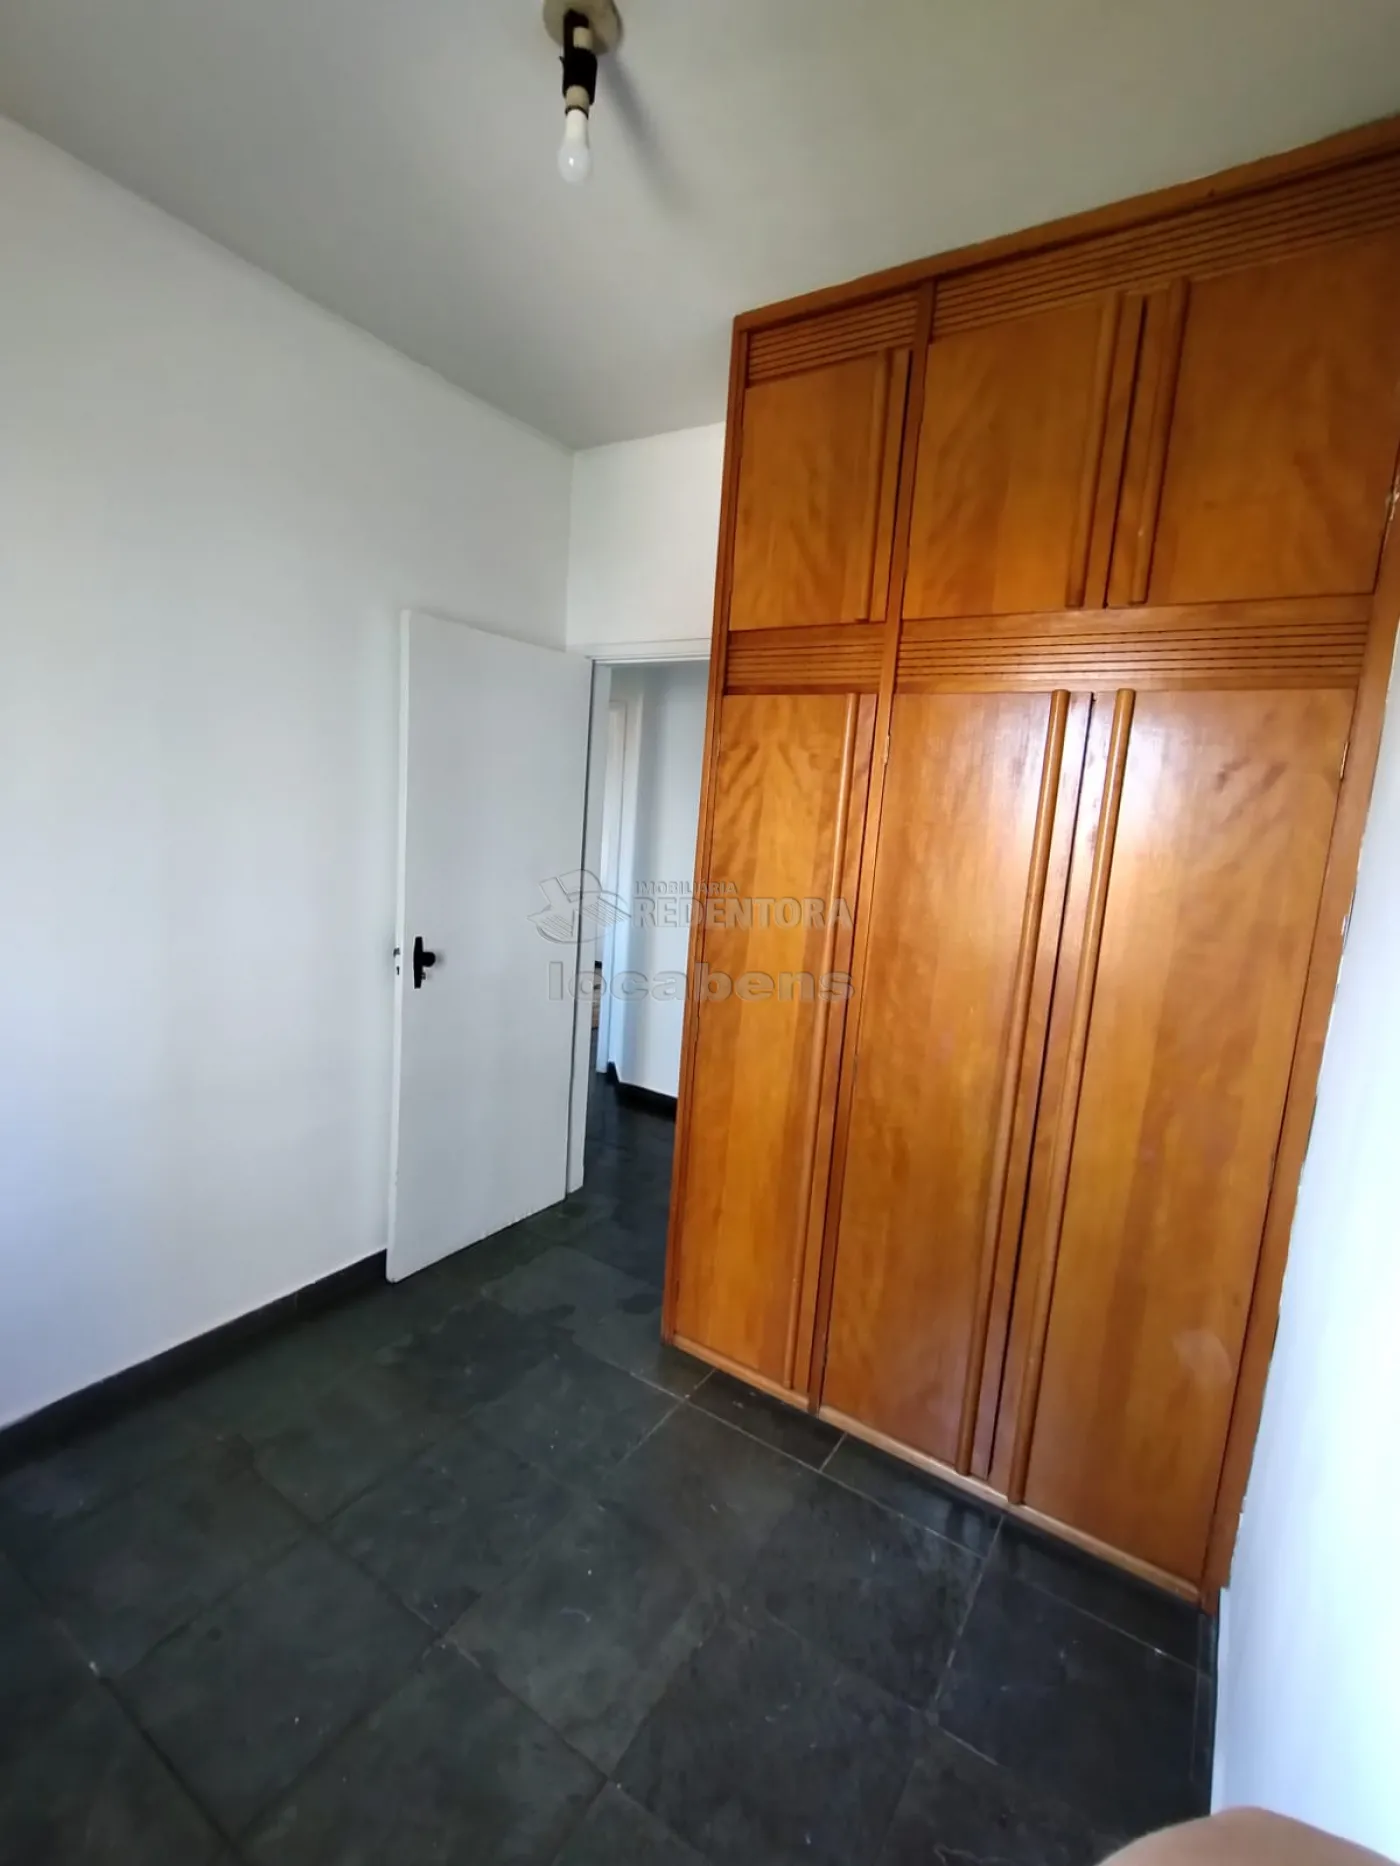 Alugar Apartamento / Padrão em São José do Rio Preto apenas R$ 1.200,00 - Foto 5